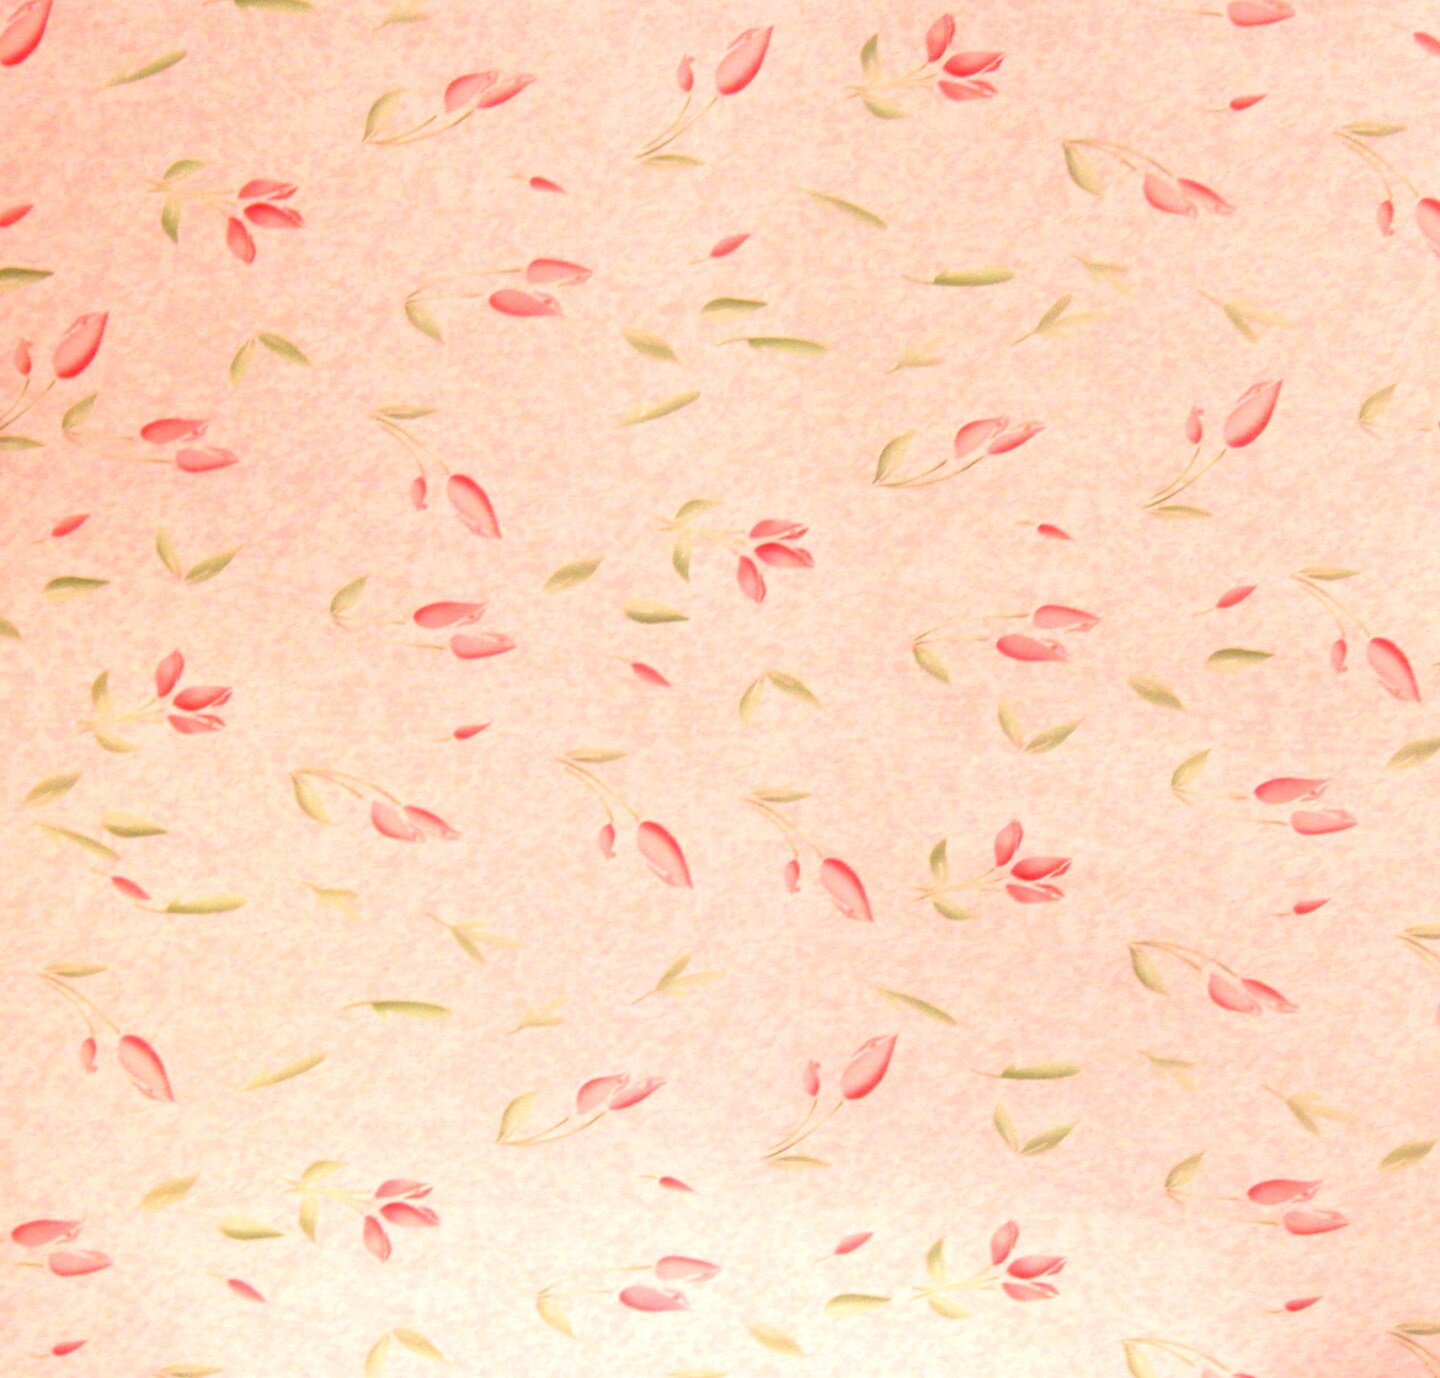 Paper Pizazz Soft Pink Flowers 12 x 12 Scrapbook Paper